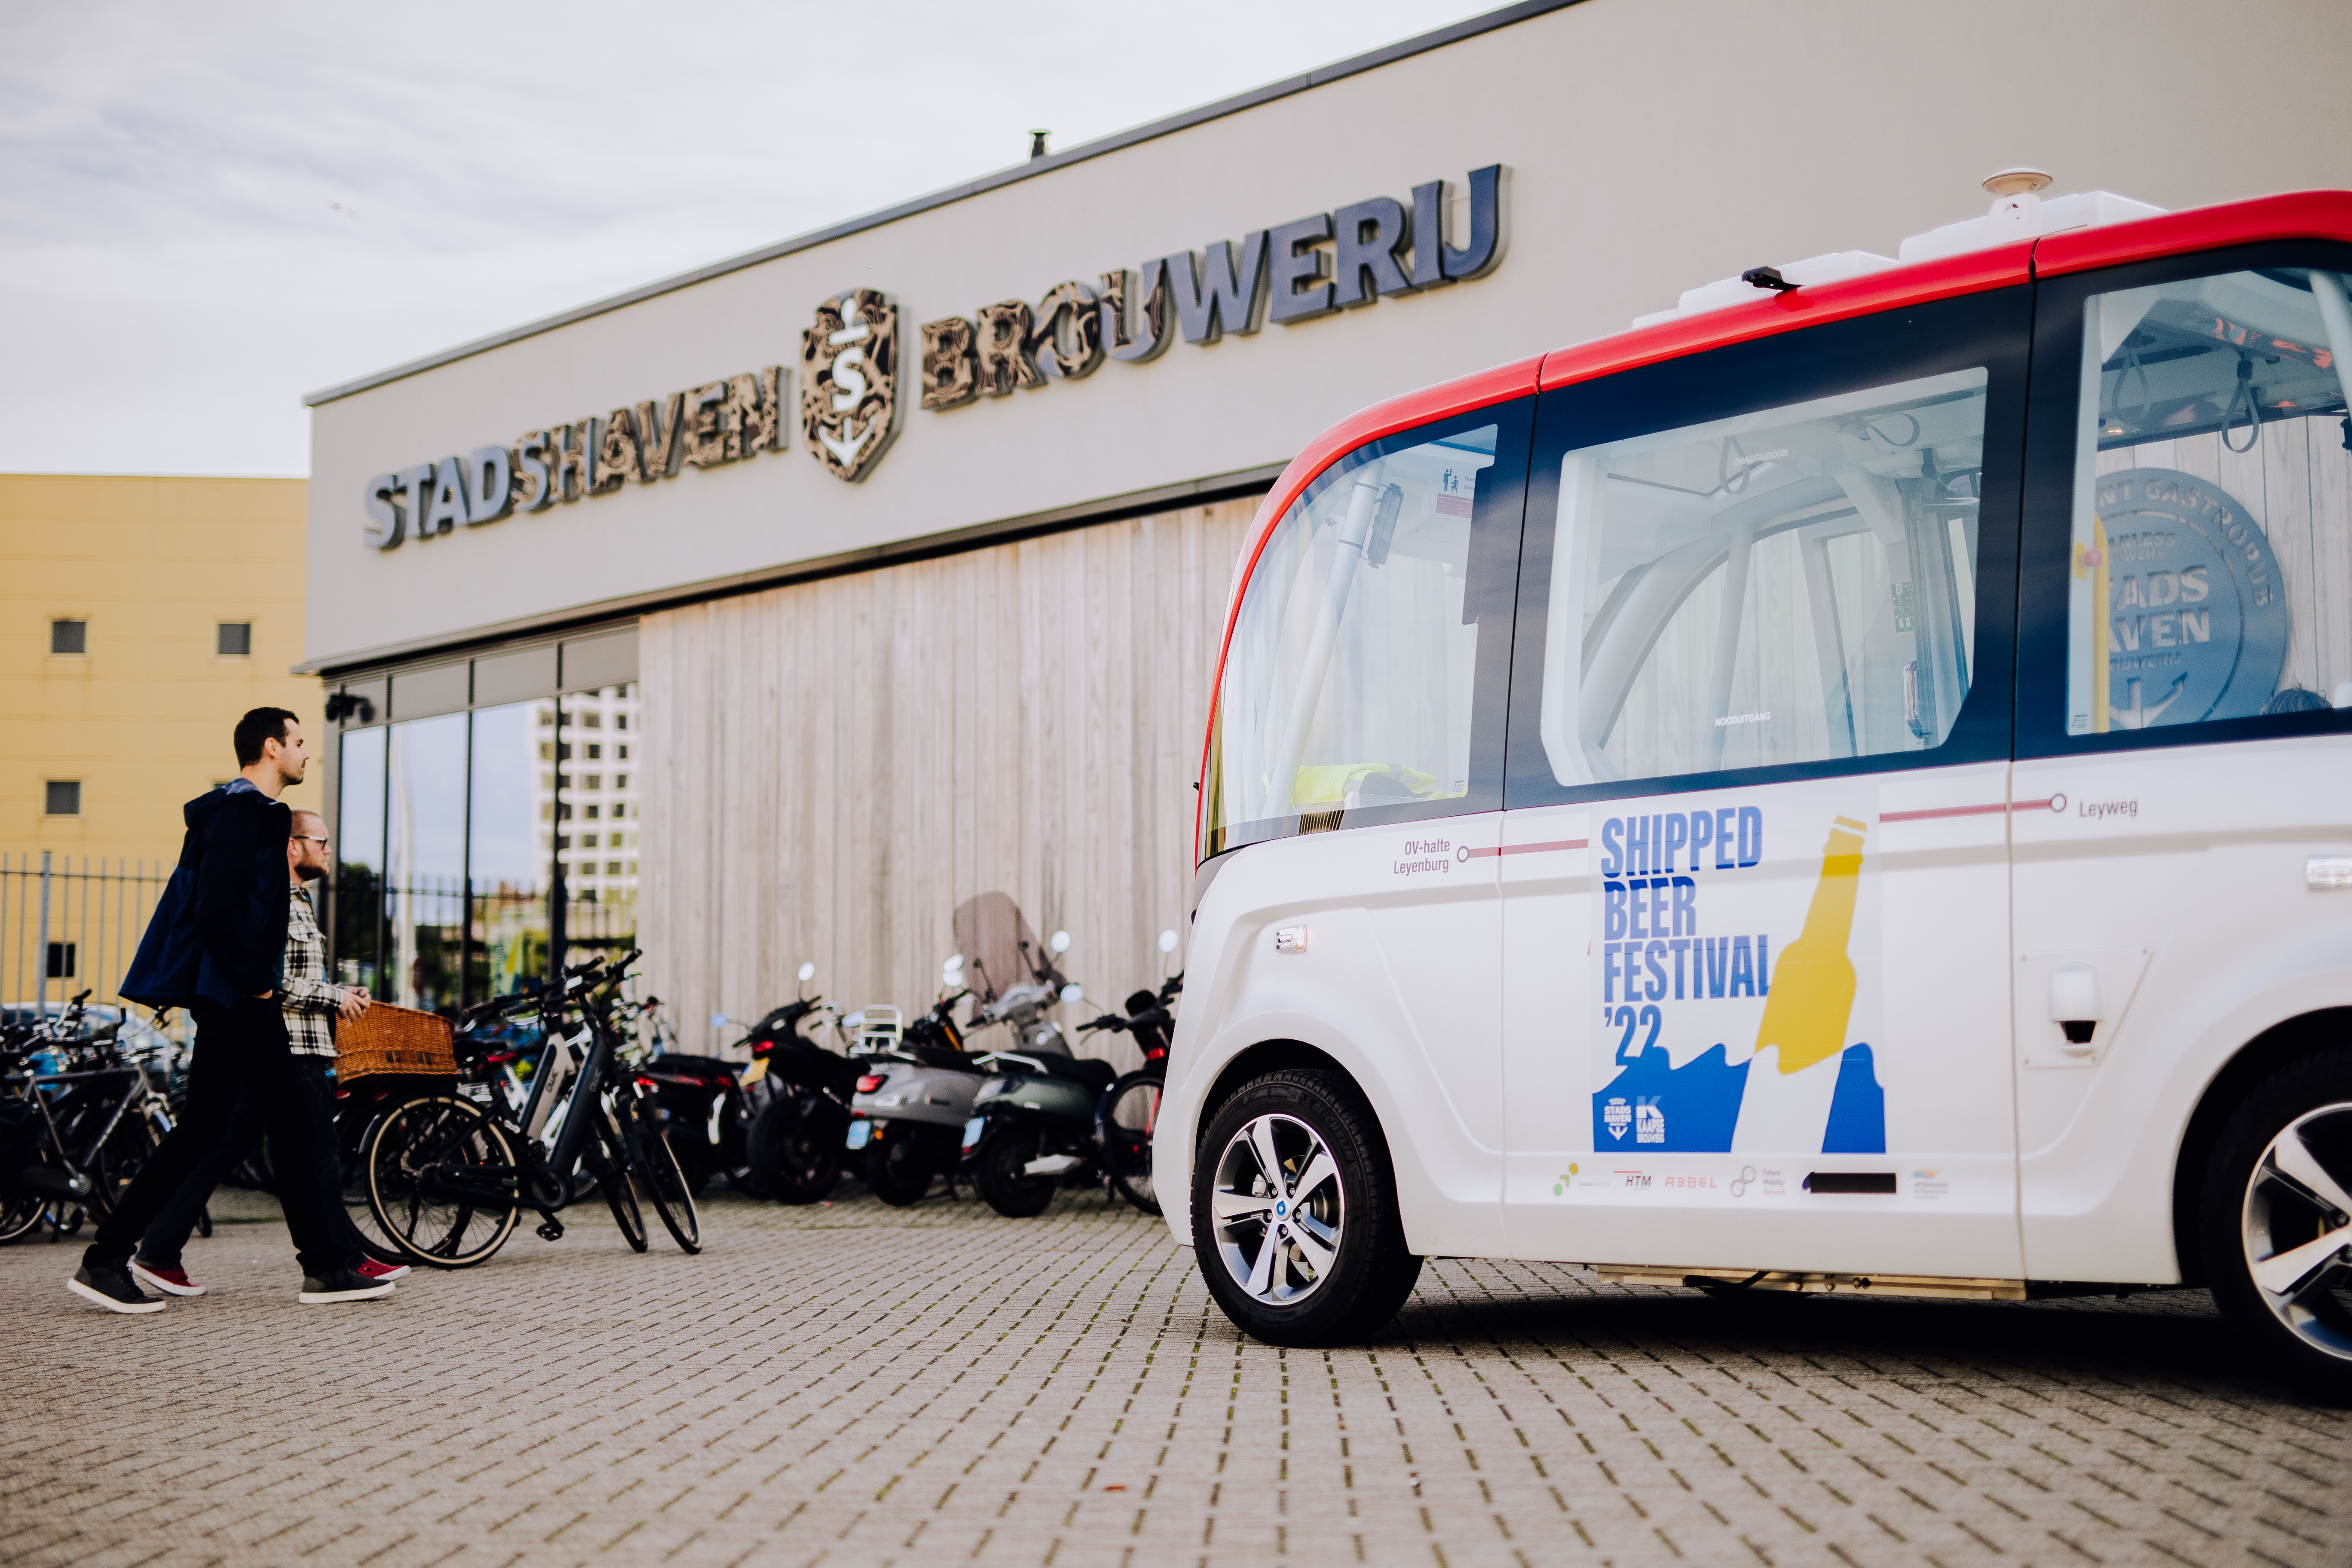 26 Stadshaven Brouwerij Duurzaamheid Future Mobility Park